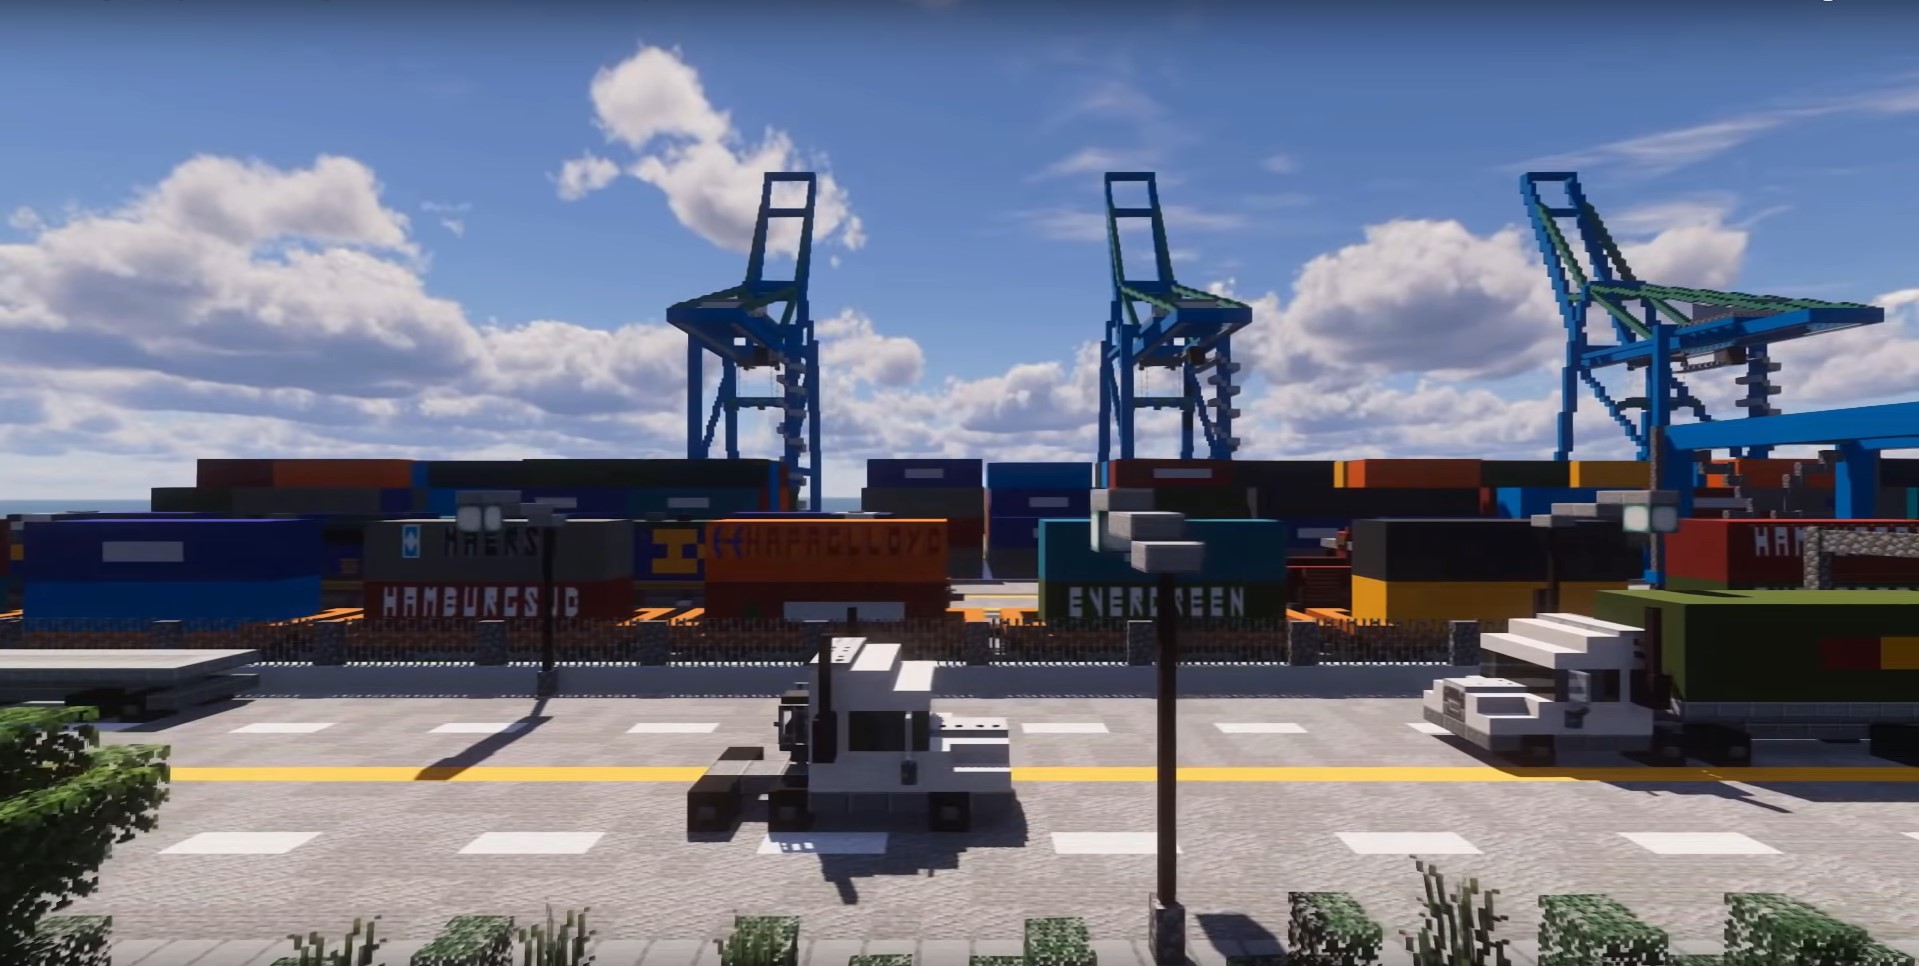 Cargo Port minecraft building idea